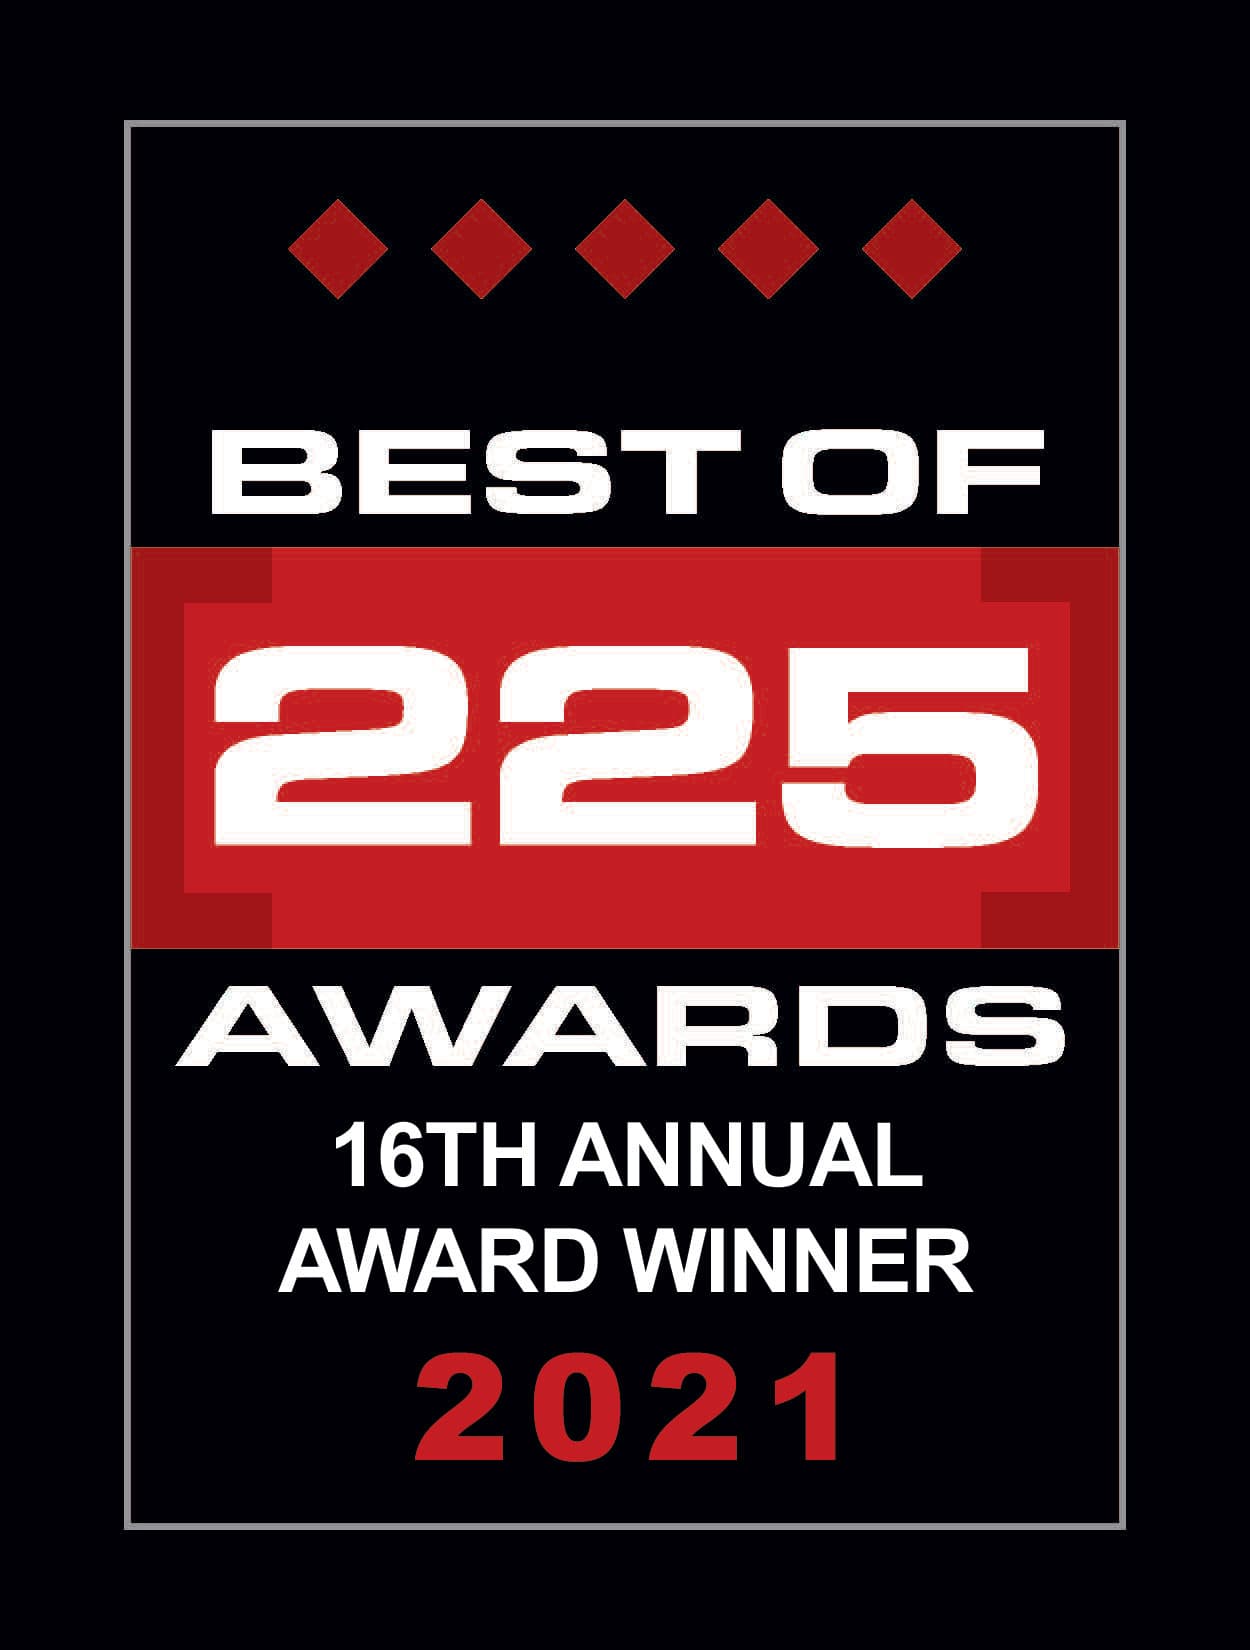 Best of 225 Awards Winner Logo